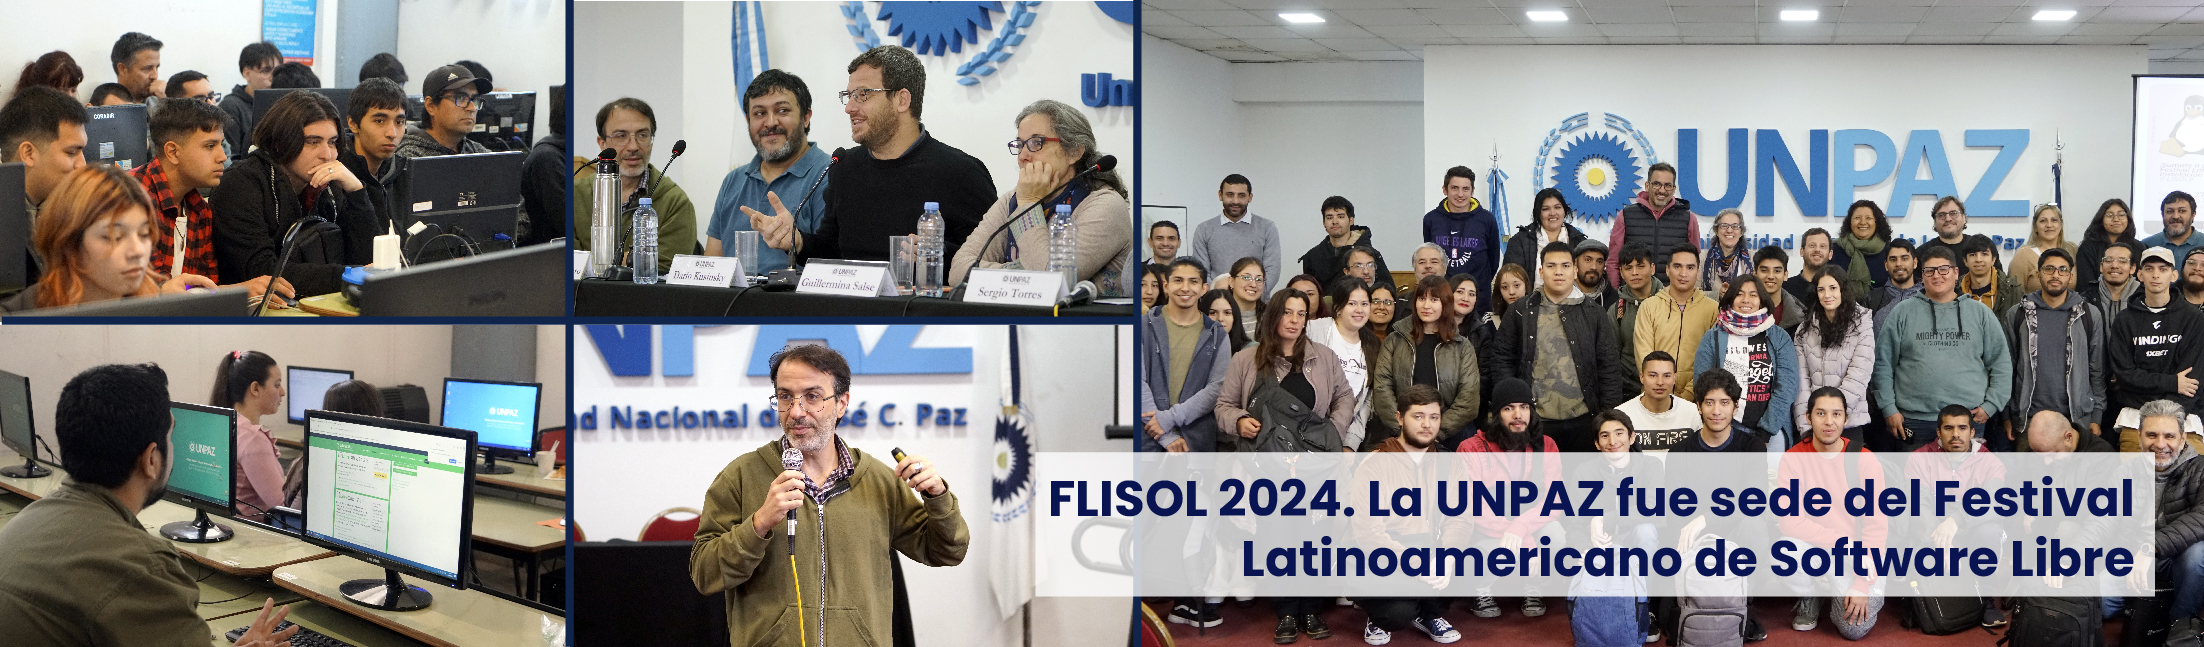 FLISOL 2024. La UNPAZ fue sede del Festival Latinoamericano de Software Libre 